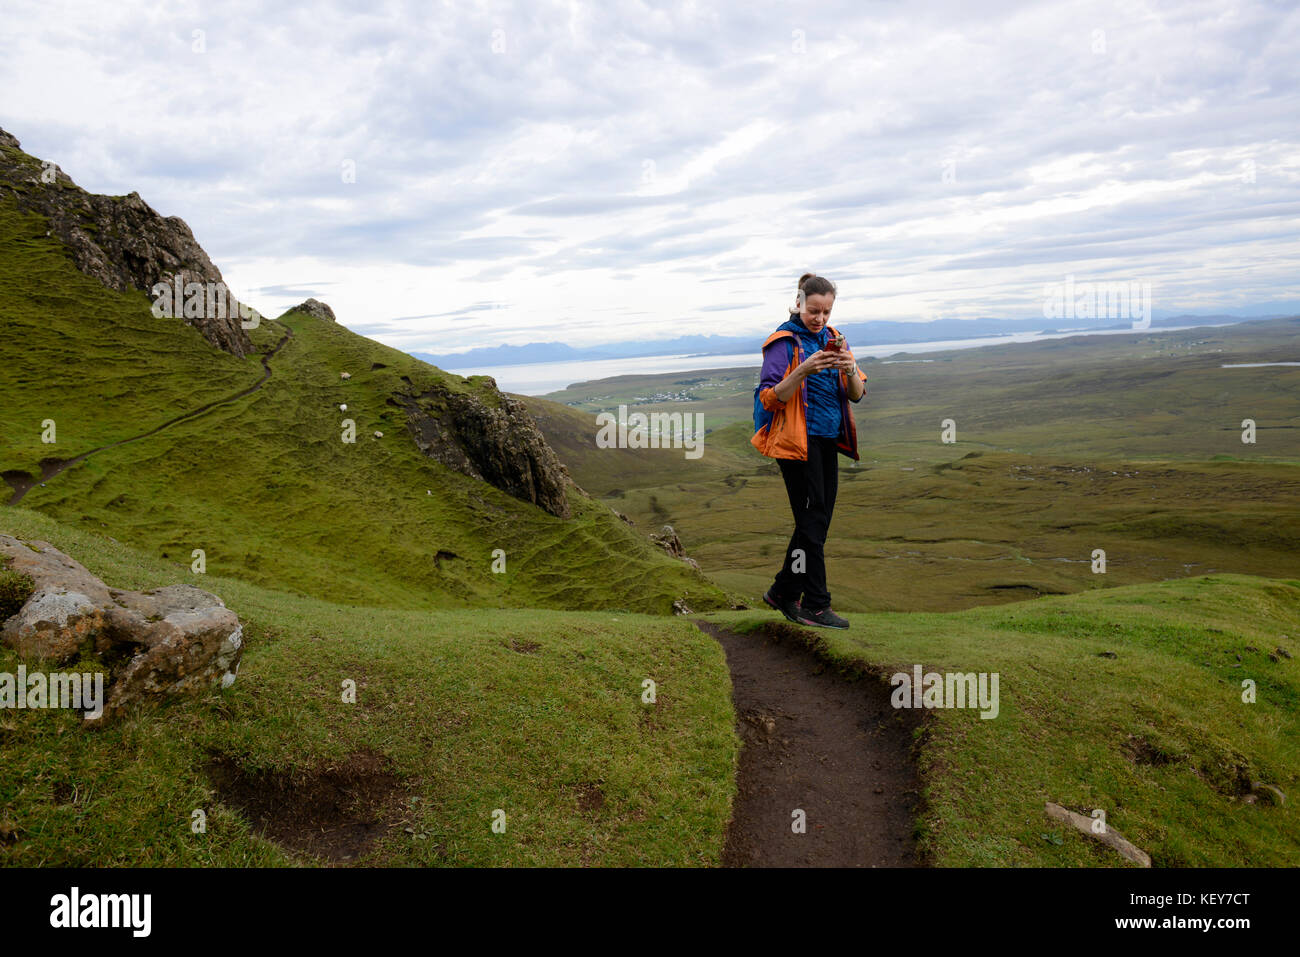 Schottisches Hochland, Isle of Skye. Cuith-Raing oder Quiraing. Wanderer macht ein Panoramabild mit ihrem Handy. Stockfoto